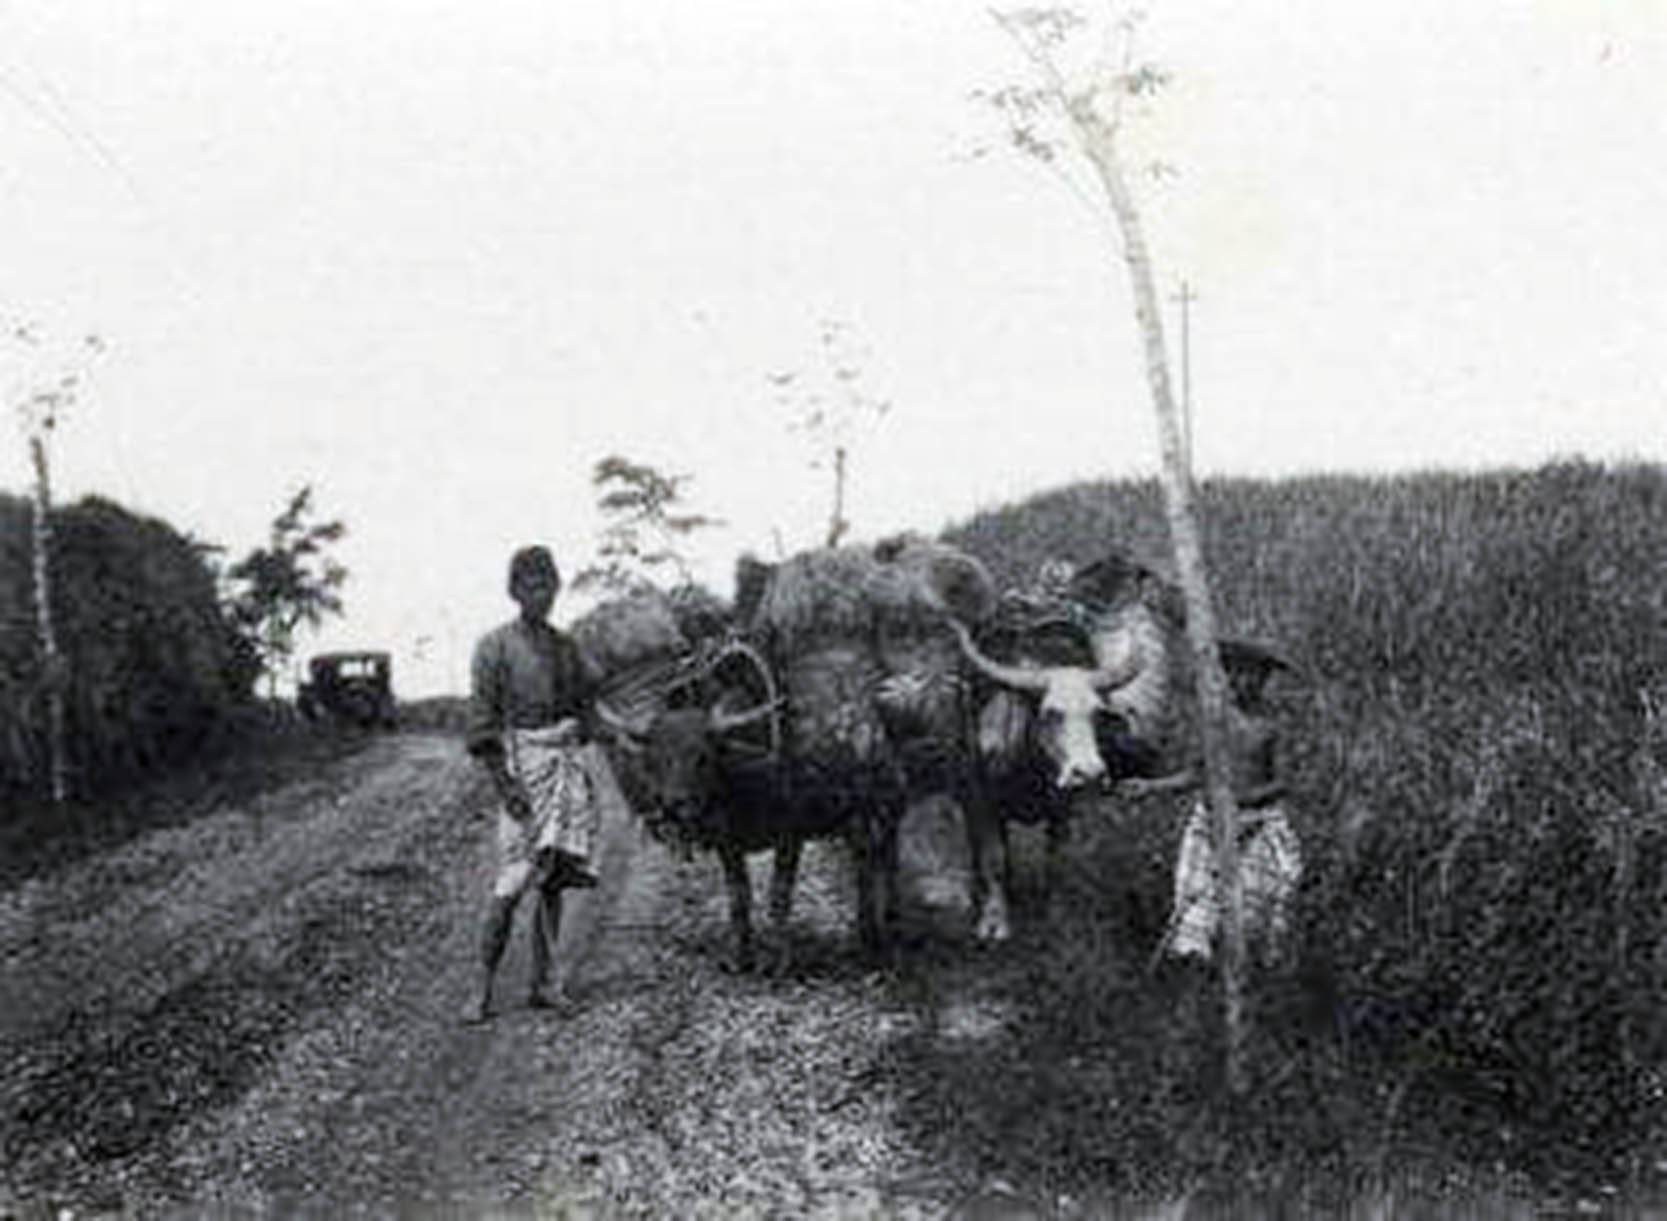 Kerbau dan kuda adalah sarana transportasi utama saat itu.